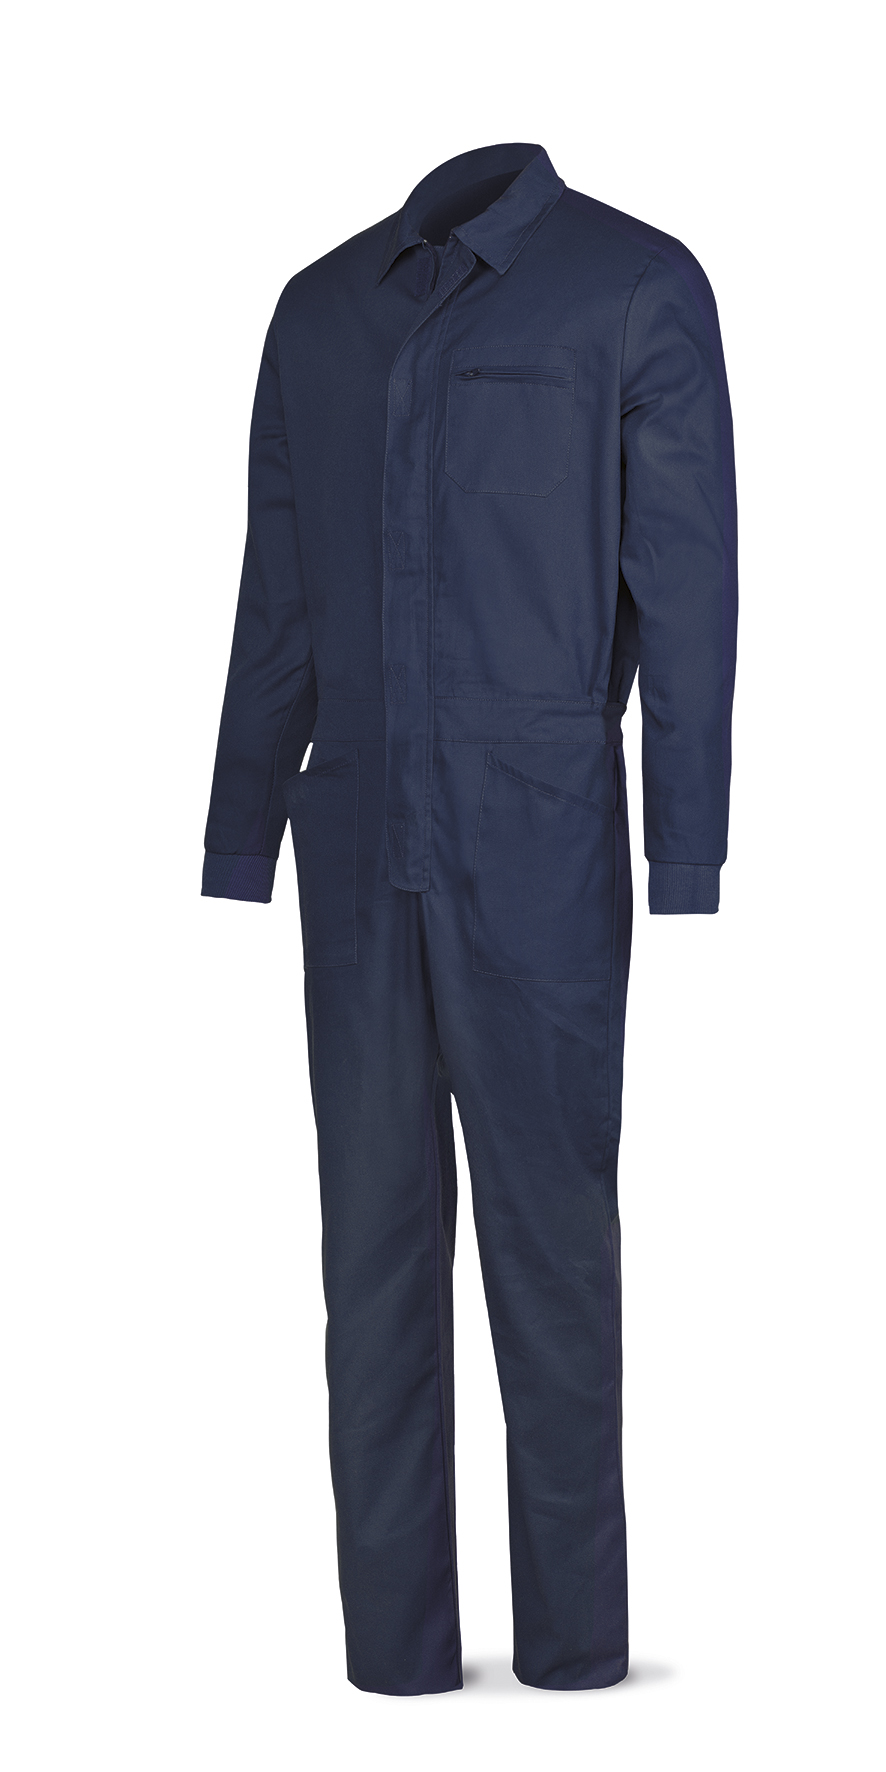 388-BTAM Workwear Basic Line Navy blue polyester/cotton jumpsuit 200 g.